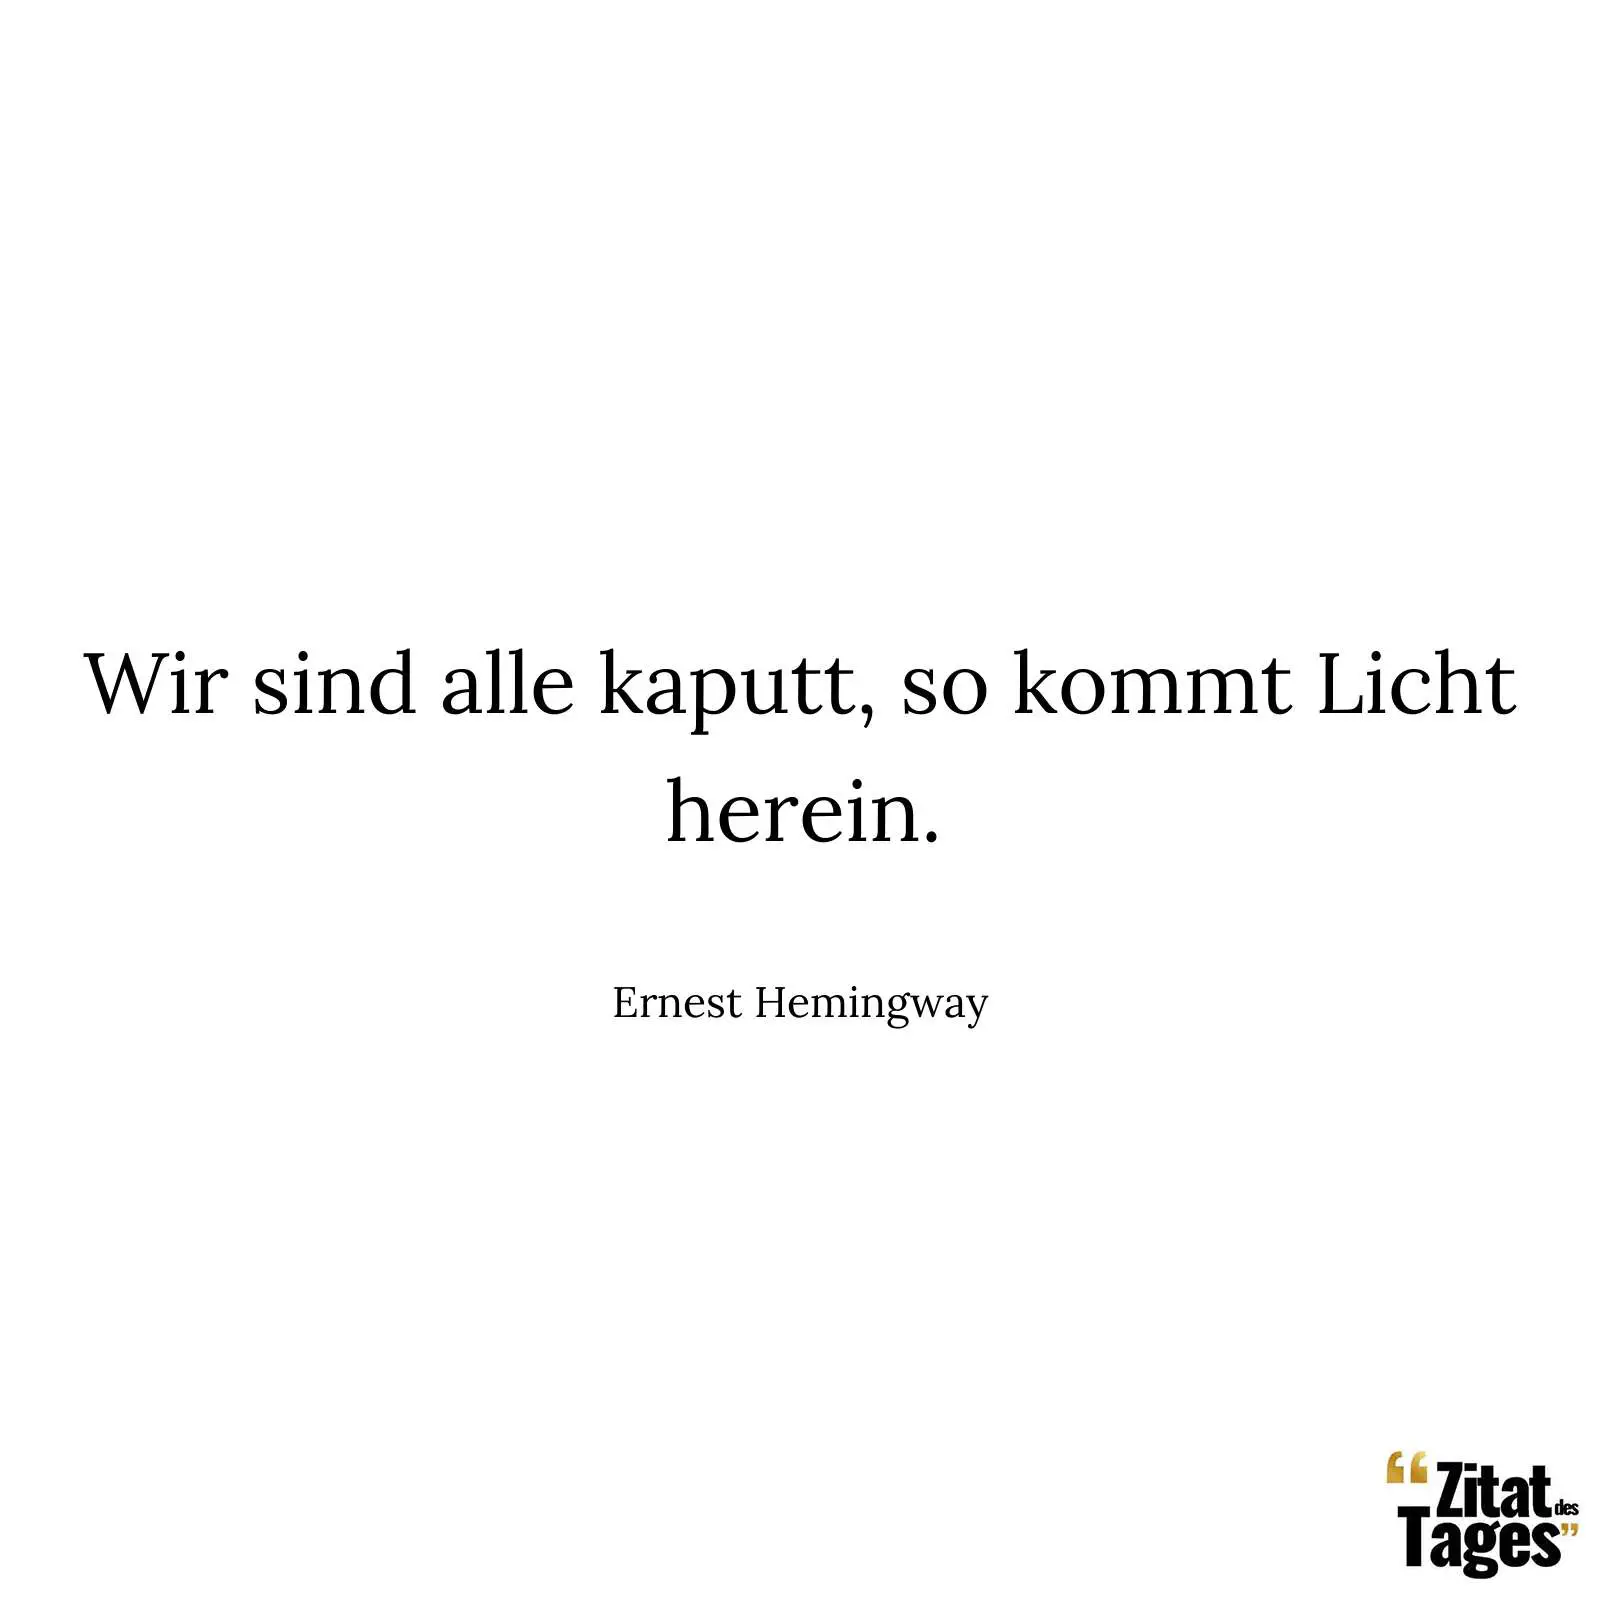 Wir sind alle kaputt, so kommt Licht herein. - Ernest Hemingway